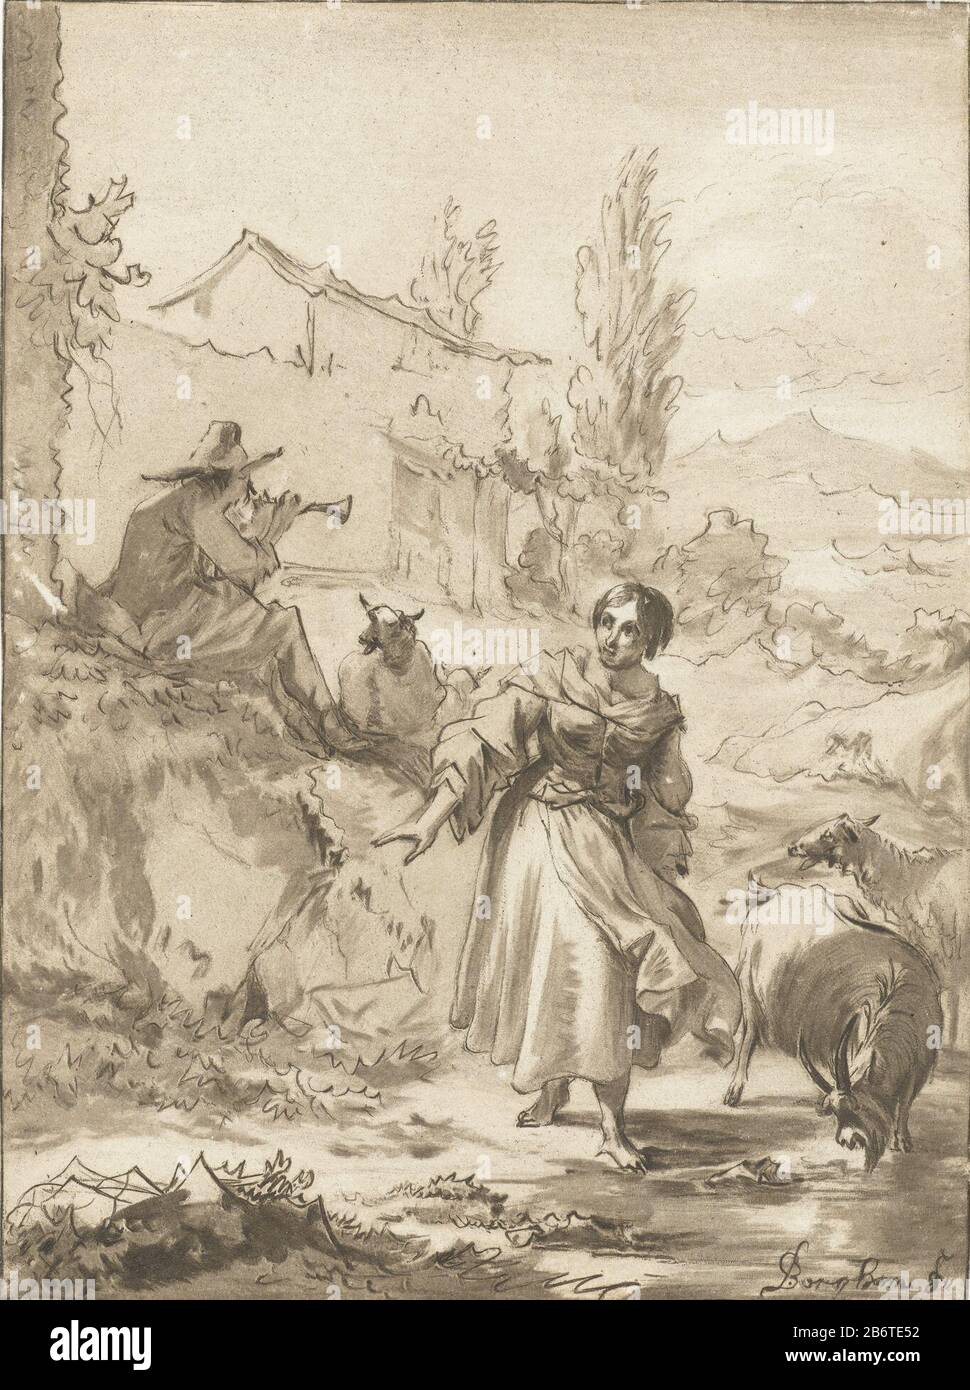 Herder ha incontrato schalmei un pastore siede su una roccia e gioca il  canto. Accanto a lui c'è un pastore. Capre sono situate intorno al Paar.  Produttore : stampatore : Jurriaan Cootwijcknaar